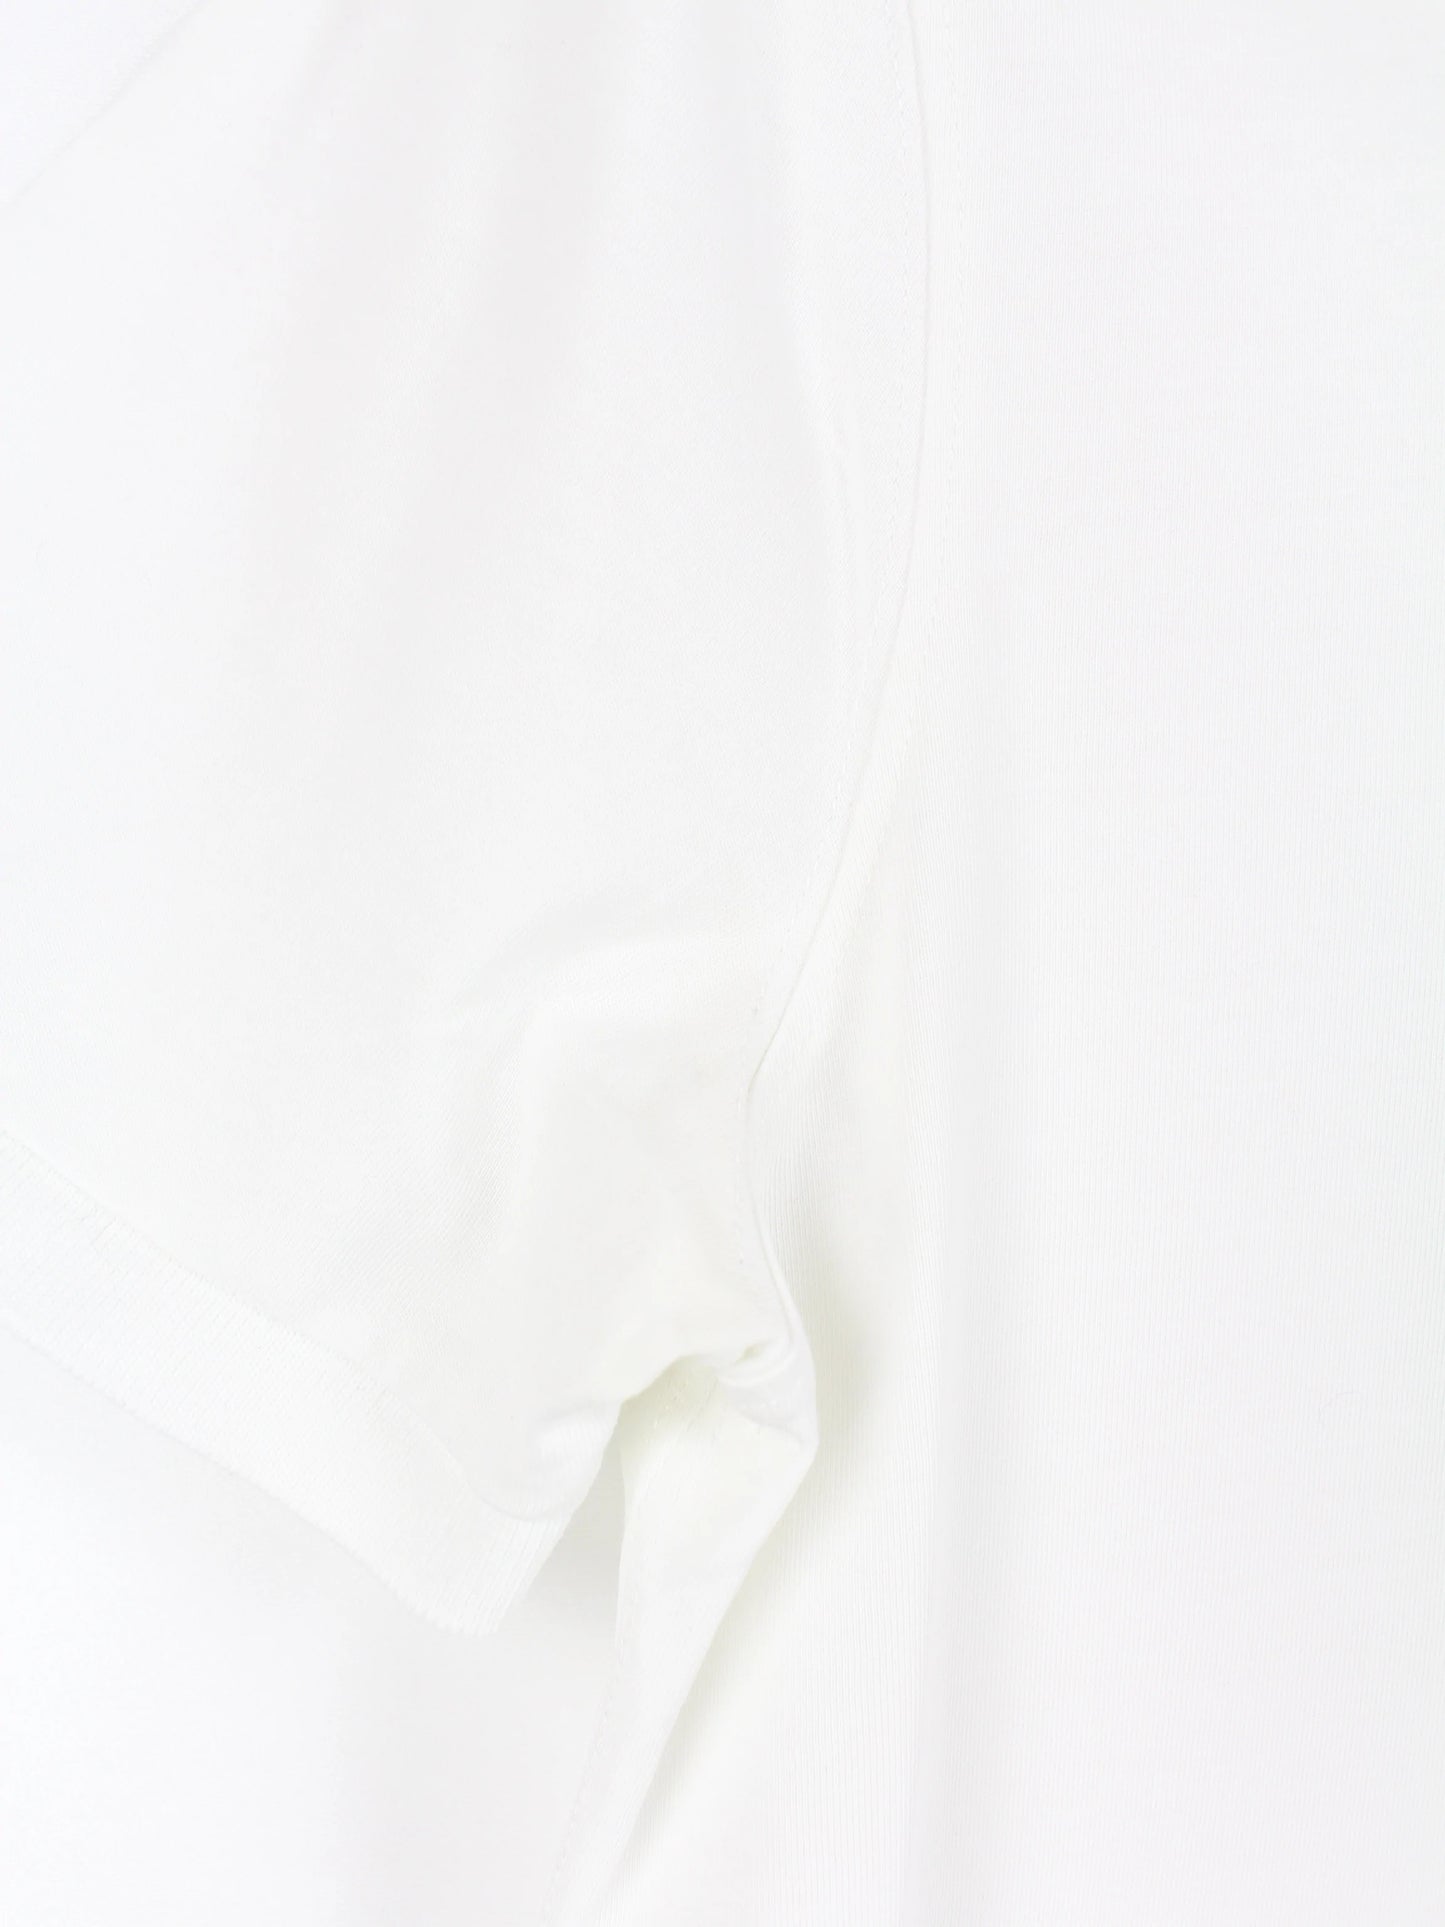 Burberry Brit Damen Poloshirt Weiß M